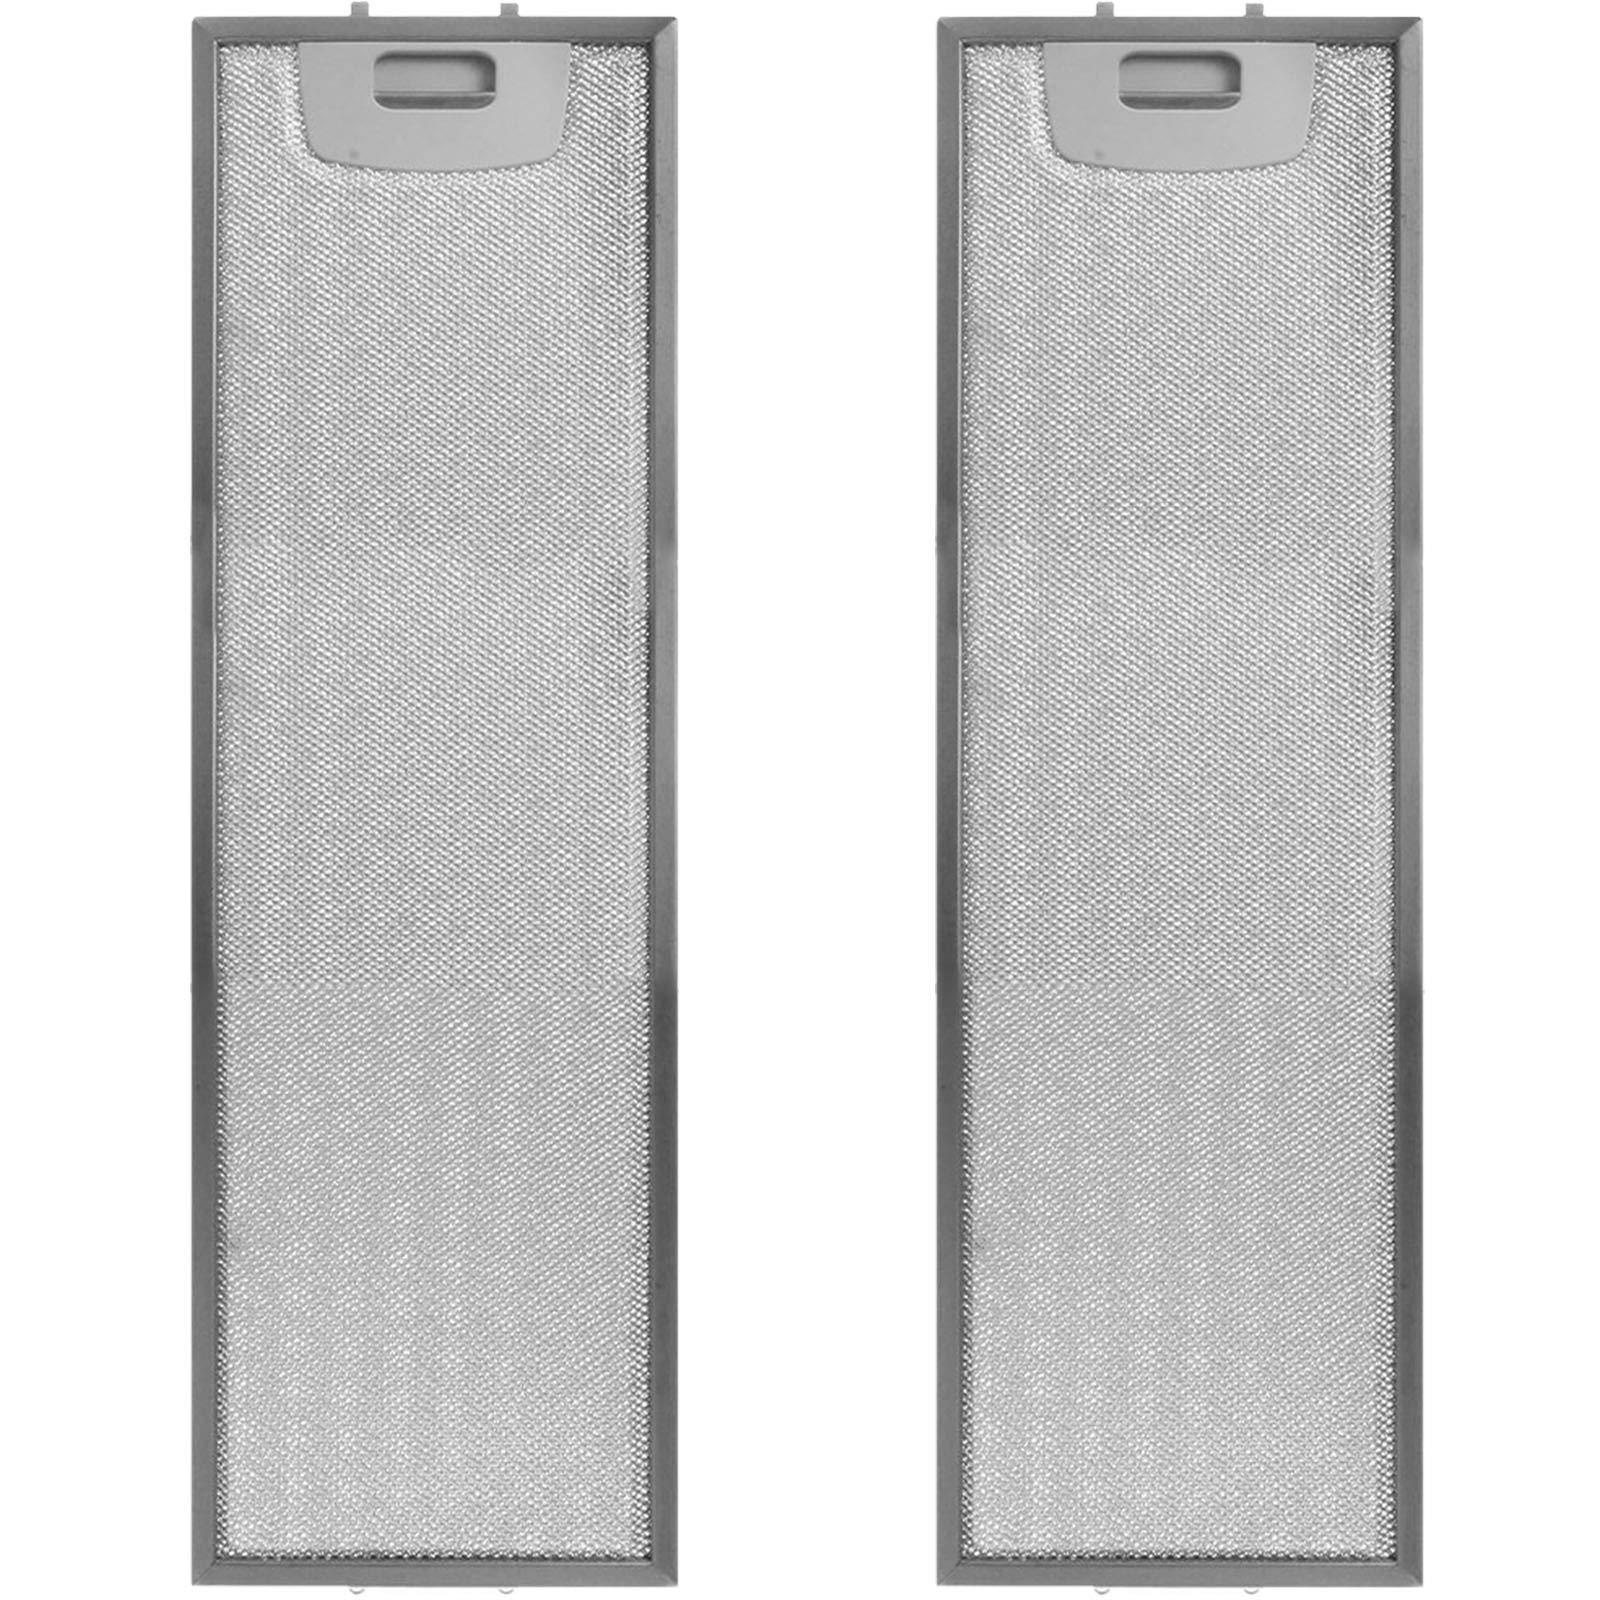 SPARES2GO Fettfilter aus Metall, kompatibel mit Elica-Dunstabzugshaube (465 x 185 mm, 2 Stück)